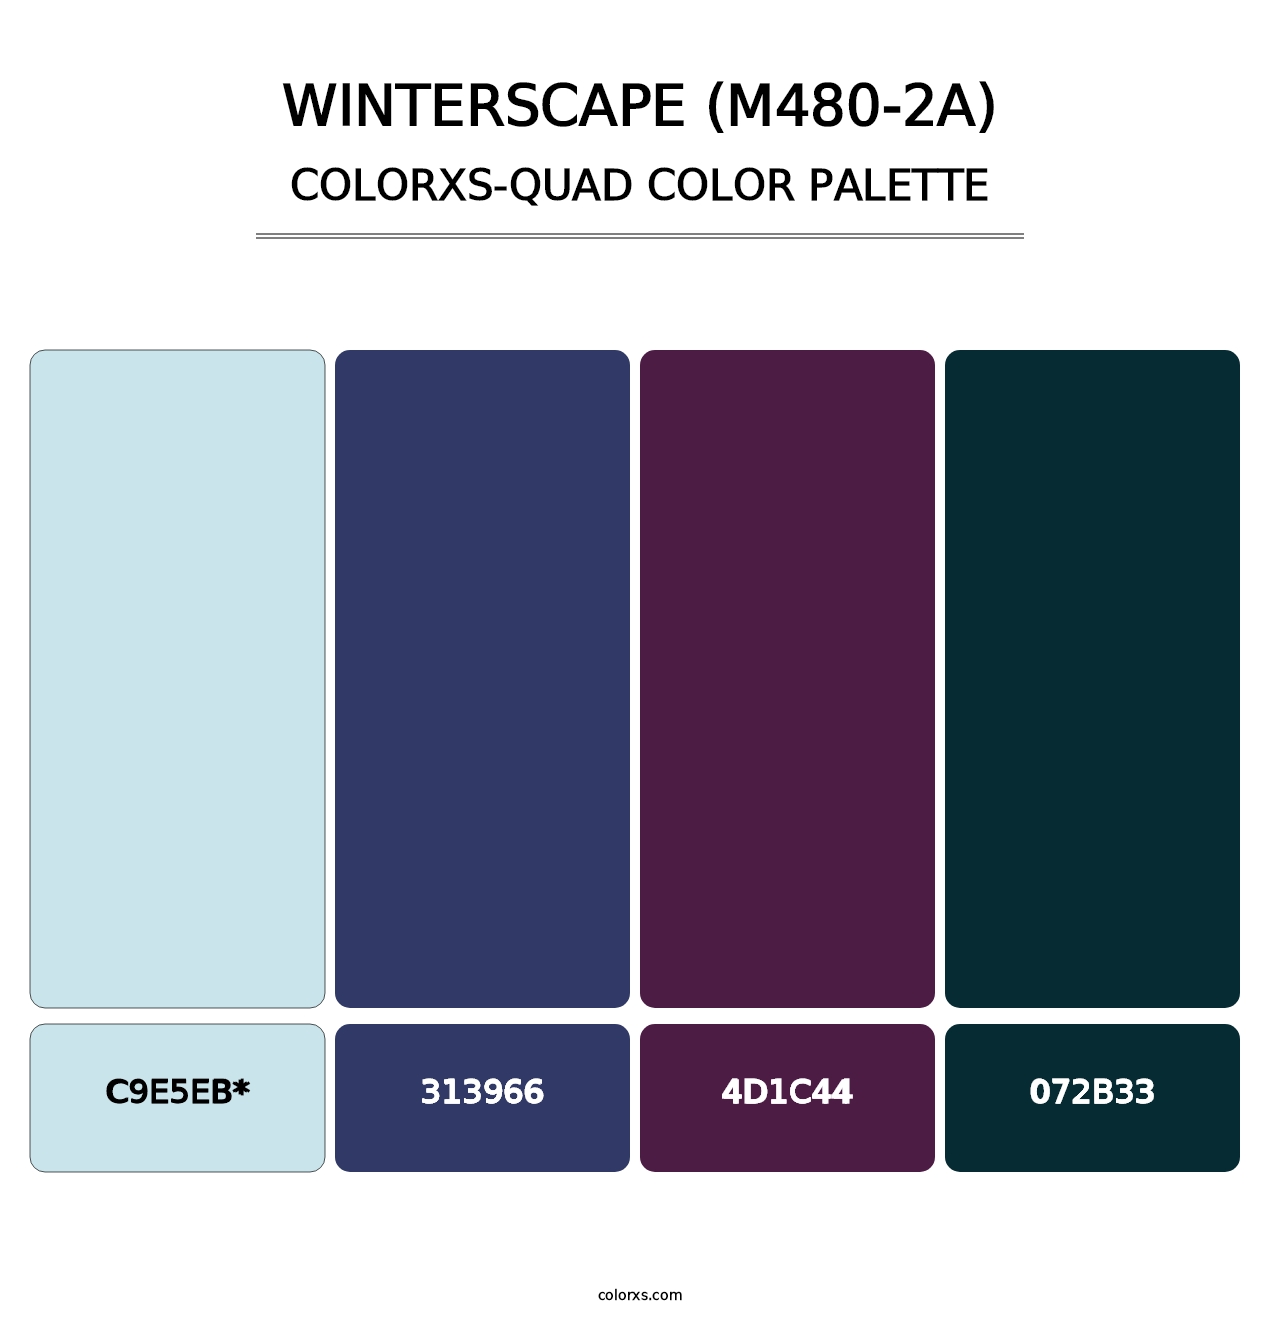 Winterscape (M480-2A) - Colorxs Quad Palette